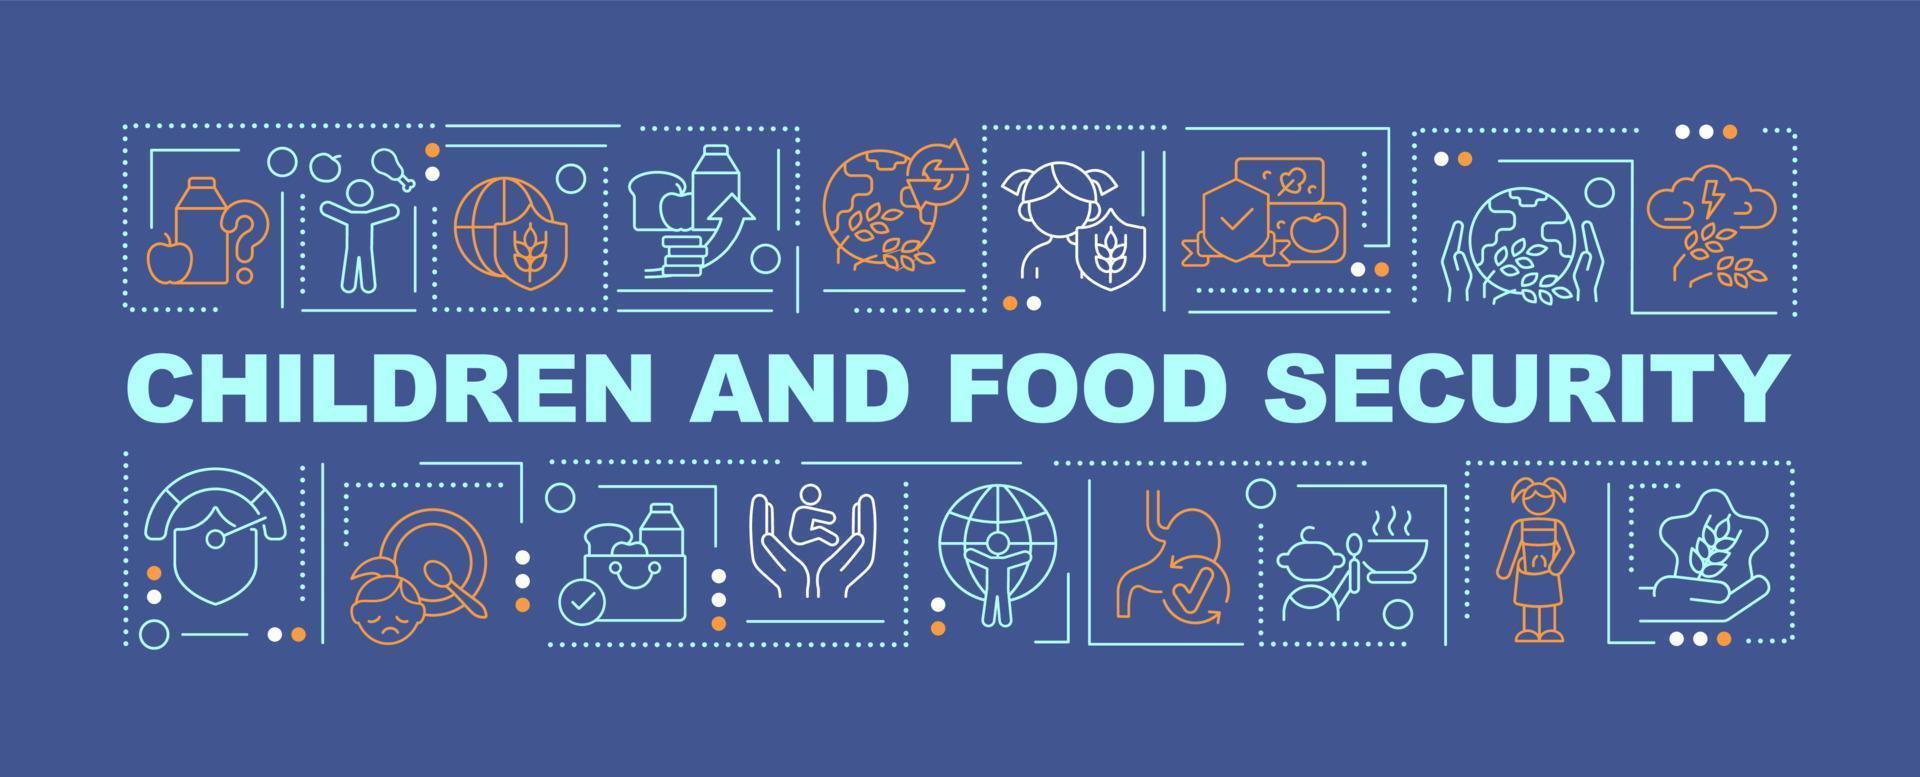 barn och livsmedelssäkerhet ord begrepp mörkblå banner. tillgänglig näring. infographics med ikoner på färgbakgrund. isolerad typografi. vektor illustration med text.